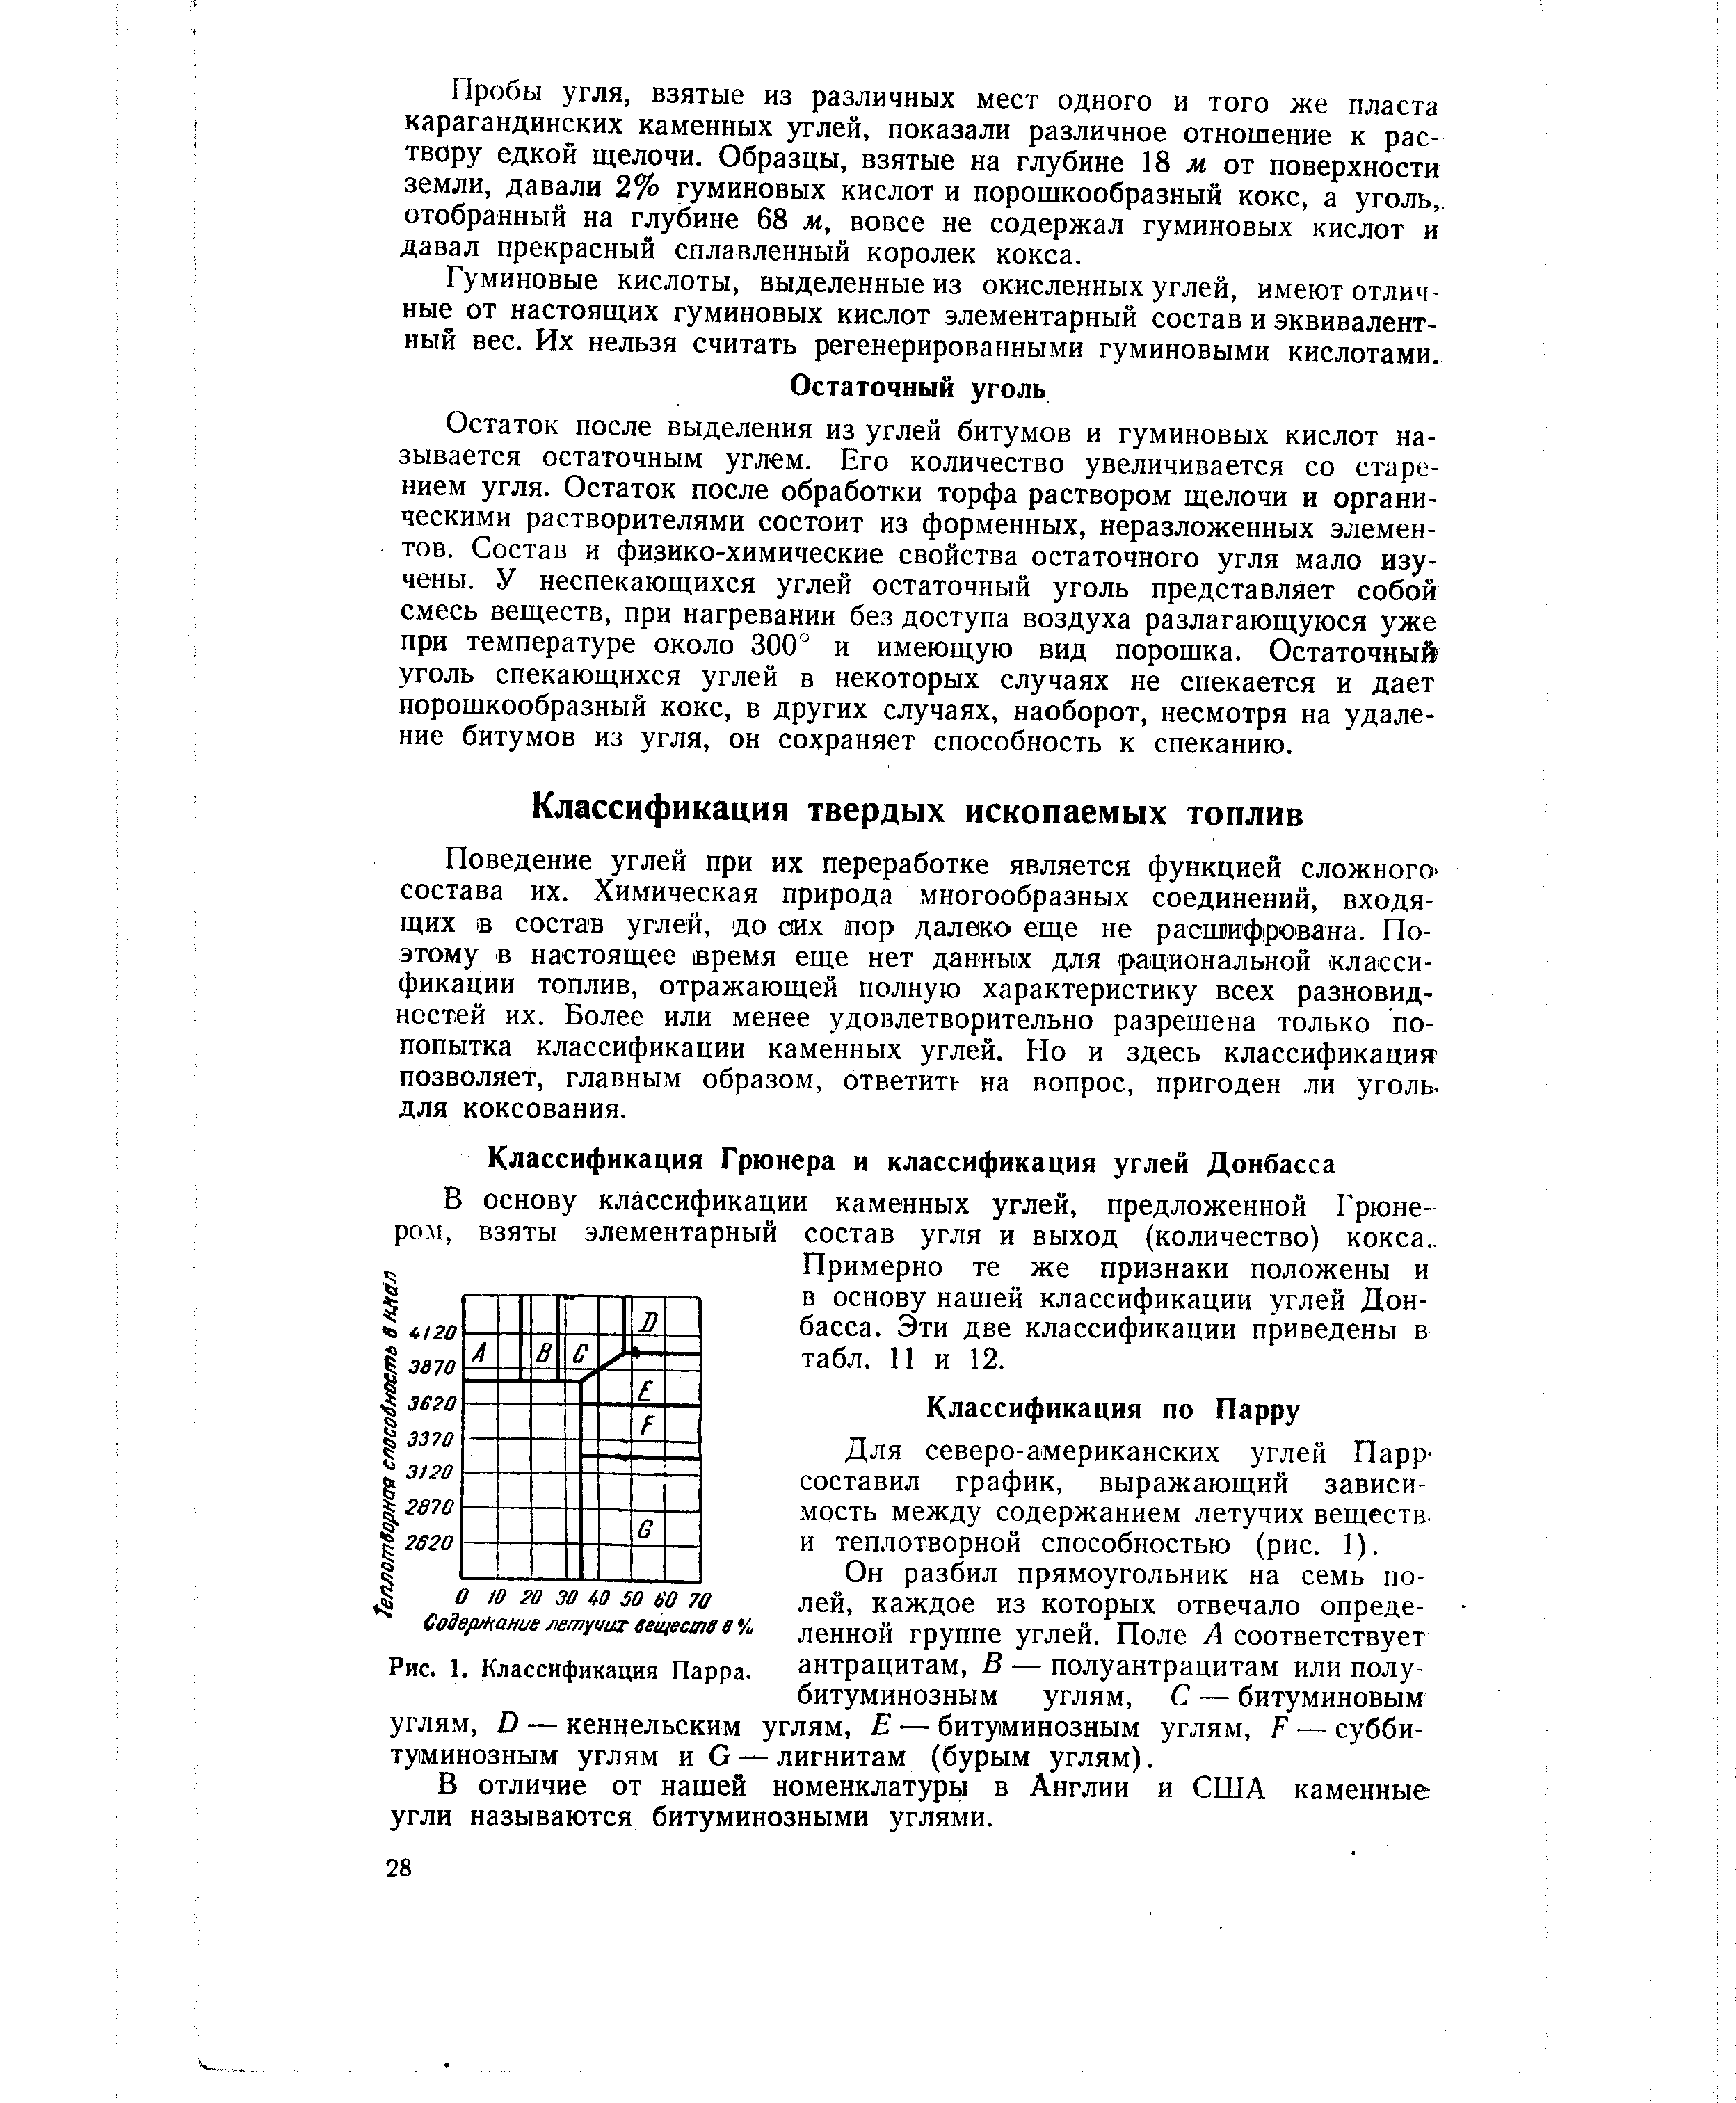 Для северо-американских углей Парр составил график, выражающий зависимость между содержанием летучих веществ, и теплотворной способностью (рис. 1).